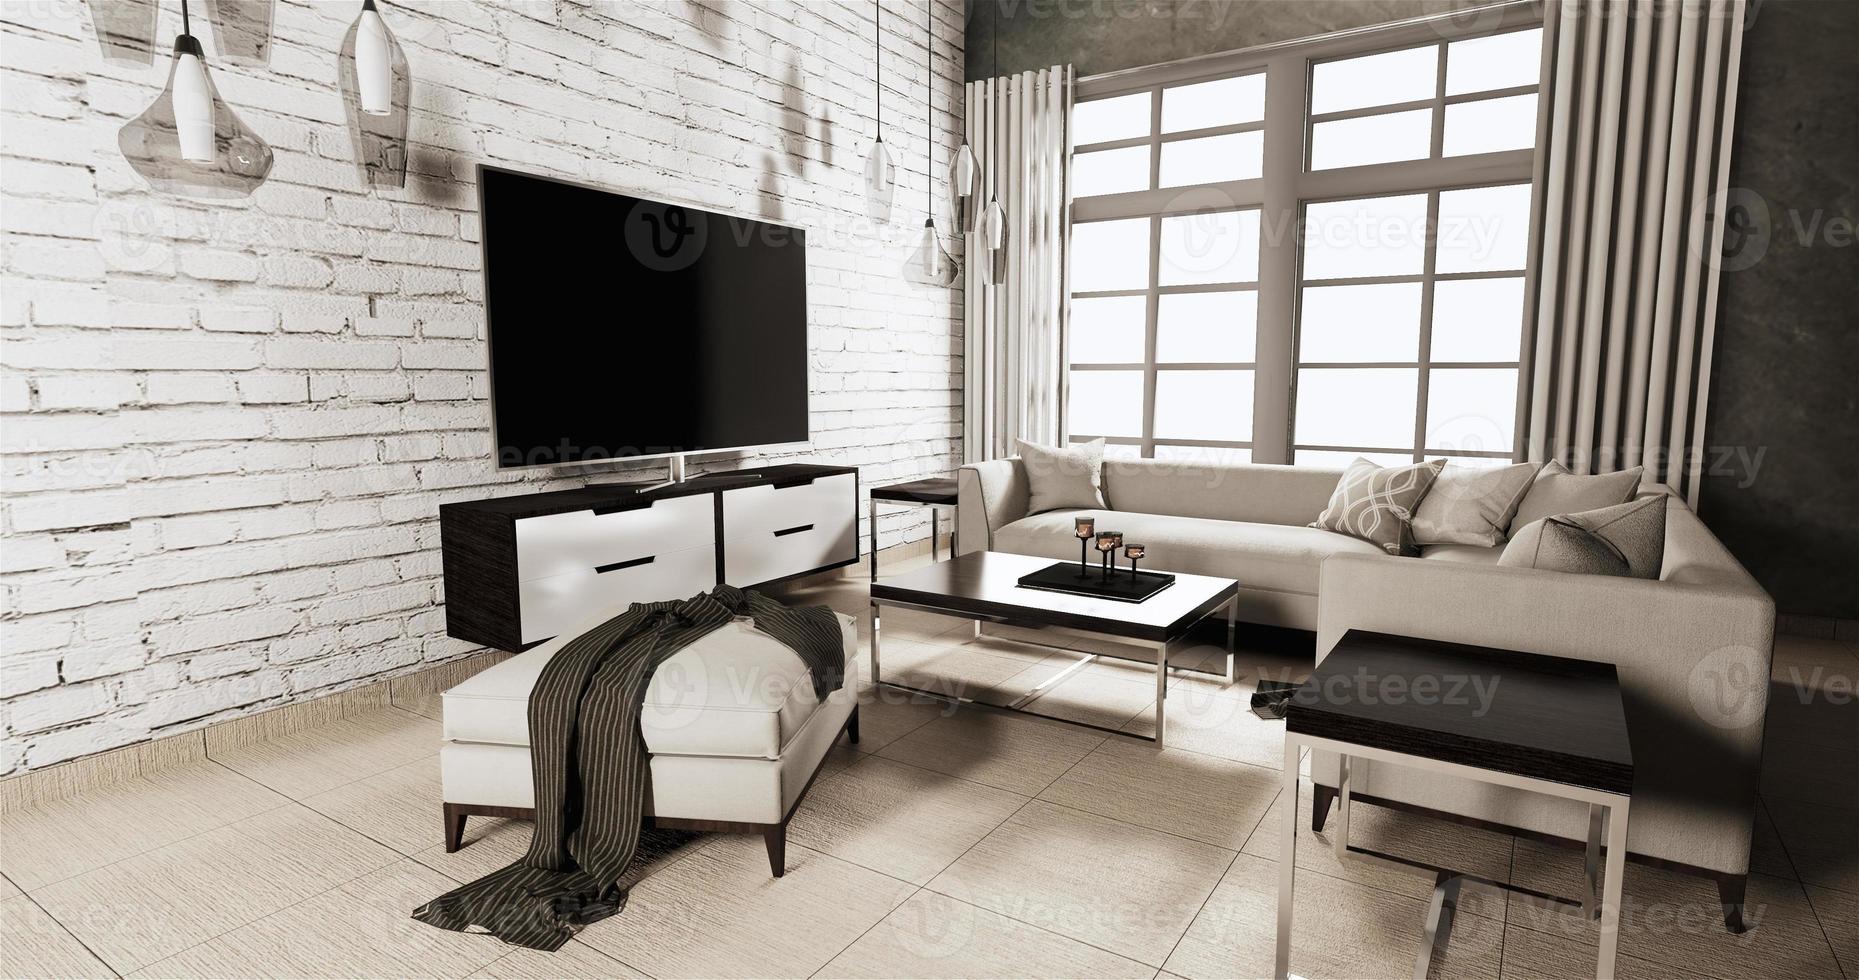 Smart tv sur meuble dans le salon de style loft avec mur de briques blanches sur parquet et canapé fauteuil.rendu 3d photo